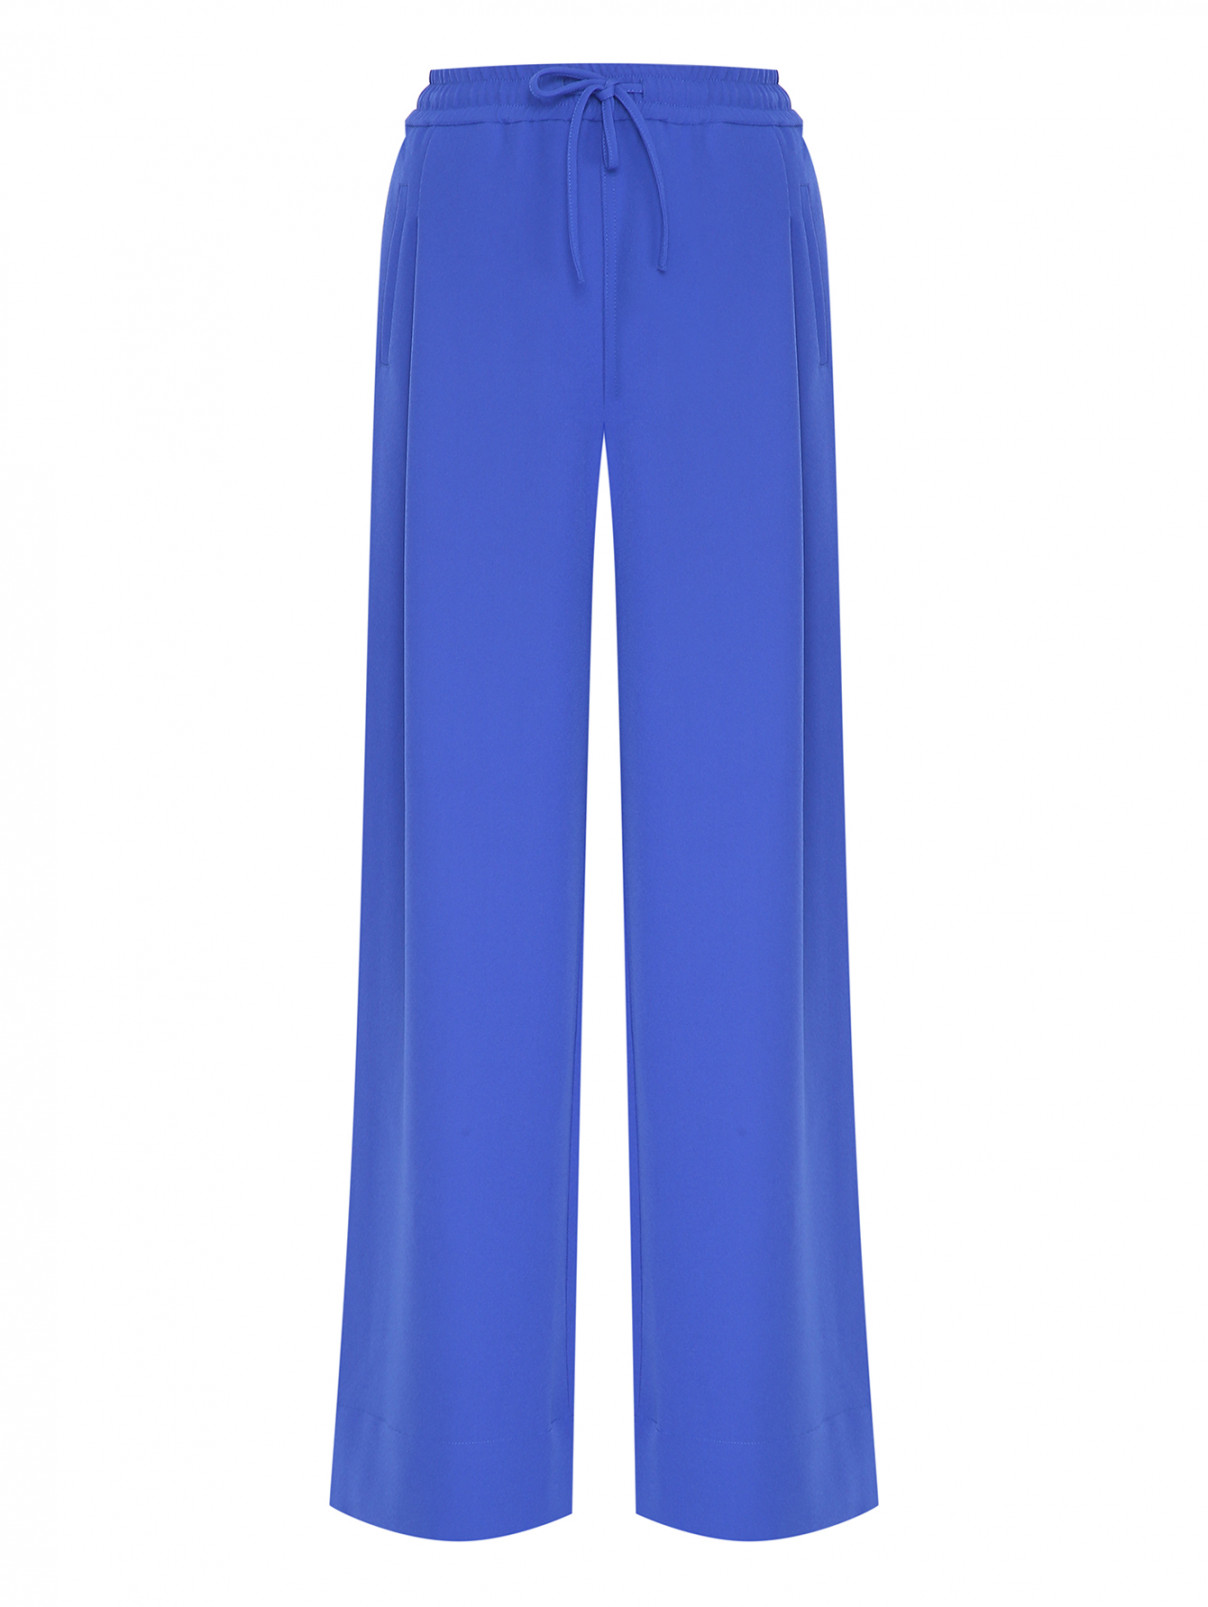 Широкие брюки на резинке Essentiel Antwerp  –  Общий вид  – Цвет:  Синий